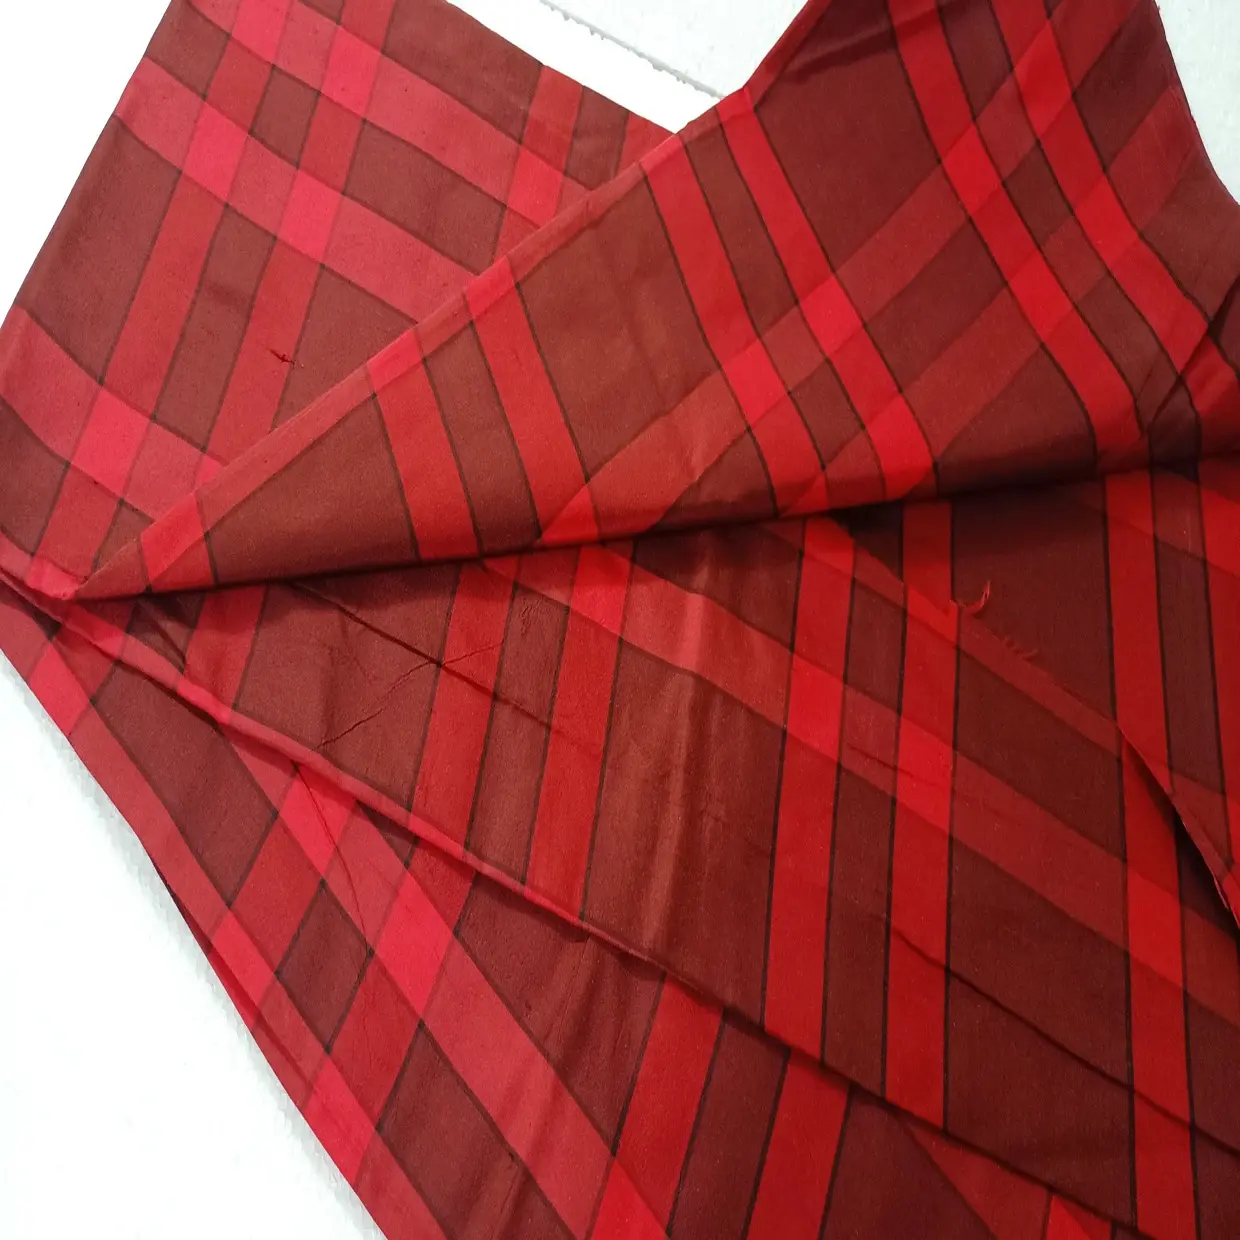 Tecido puro Siak Dupioni e Tafetá de seda em peças cortadas de tamanho 1 metro a 2 metros em vermelho escuro